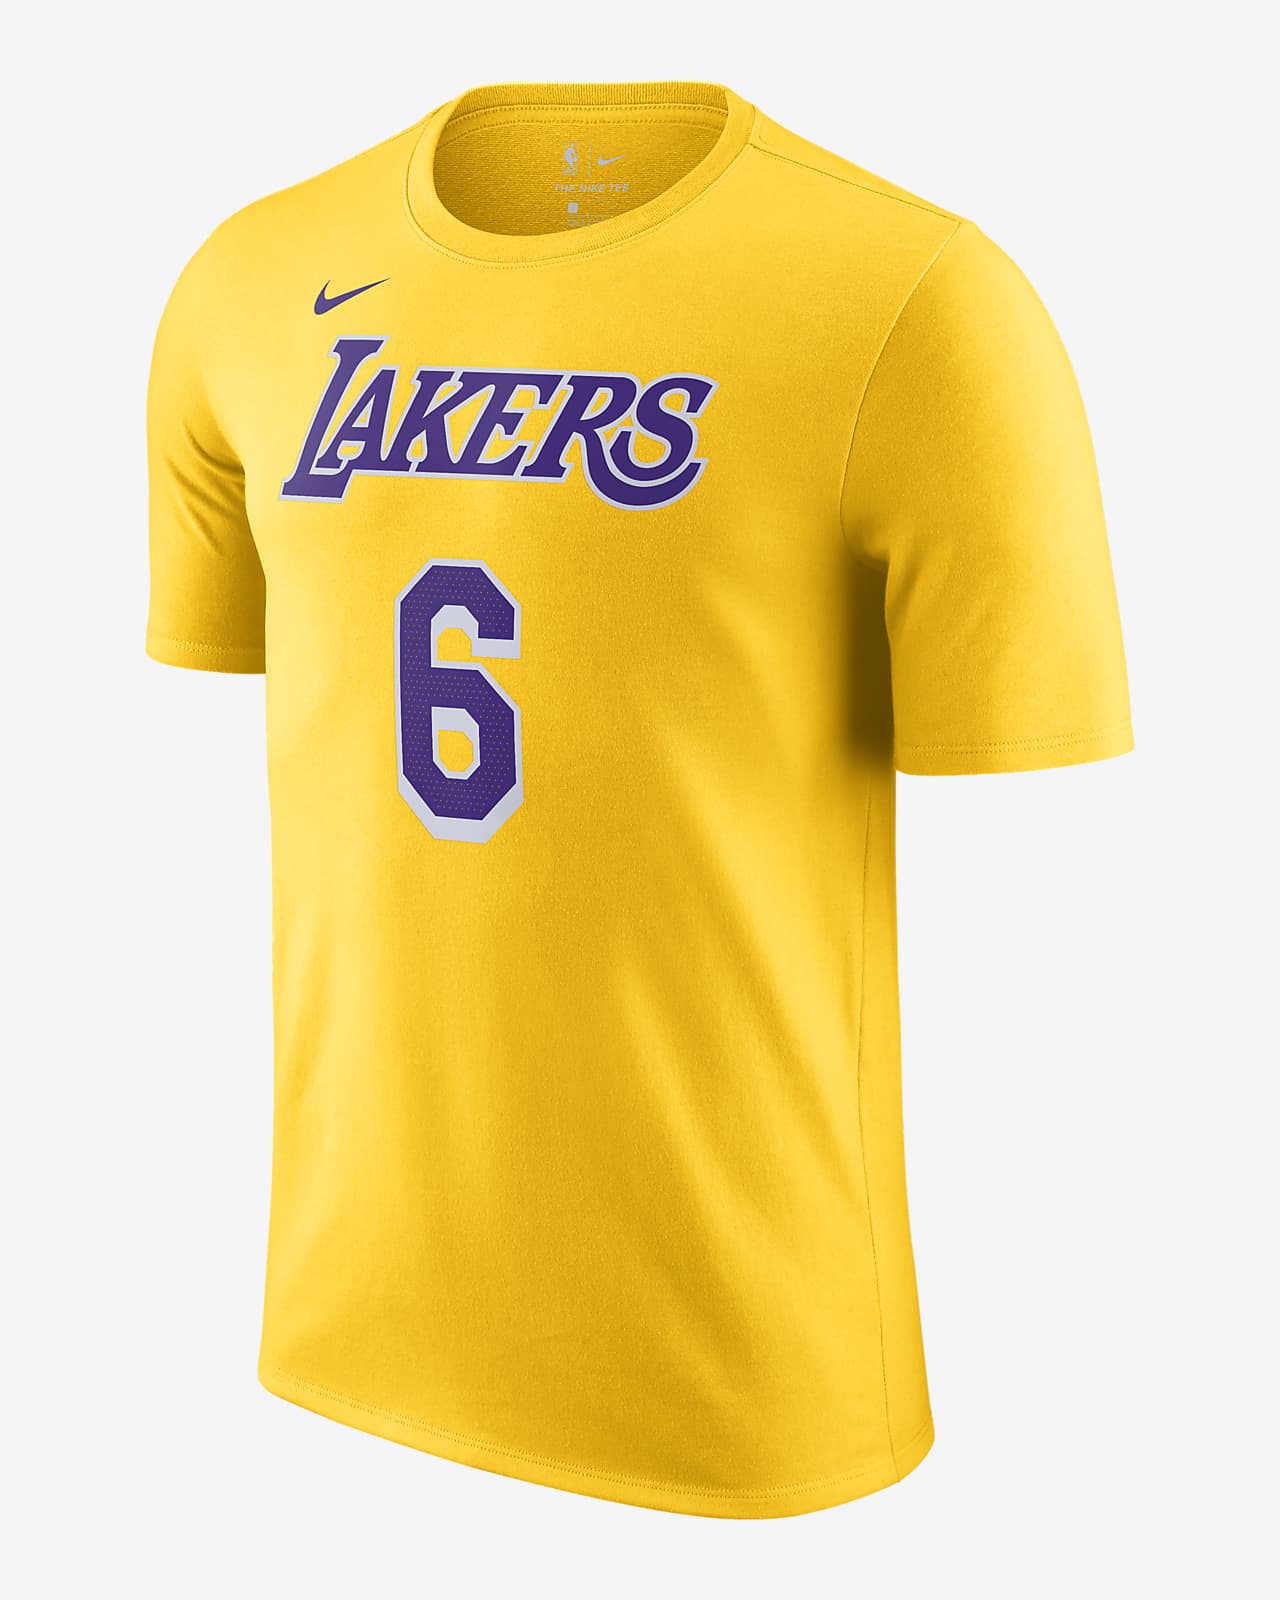 Playera Nike NBA para hombre Los Angeles Lakers